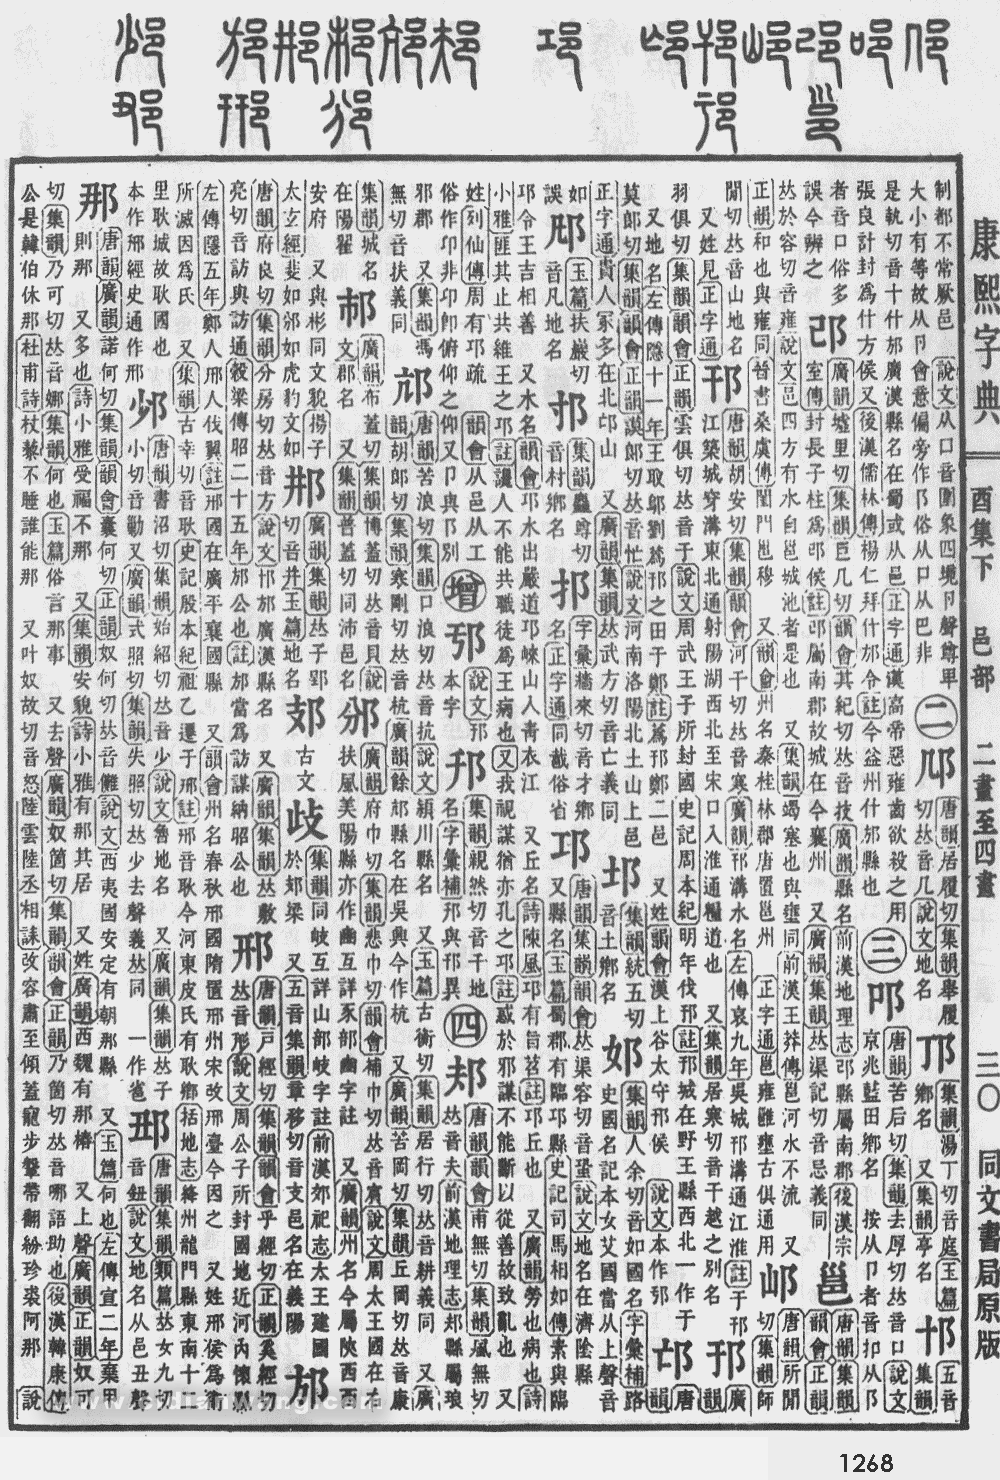 康熙字典掃描版第1268頁